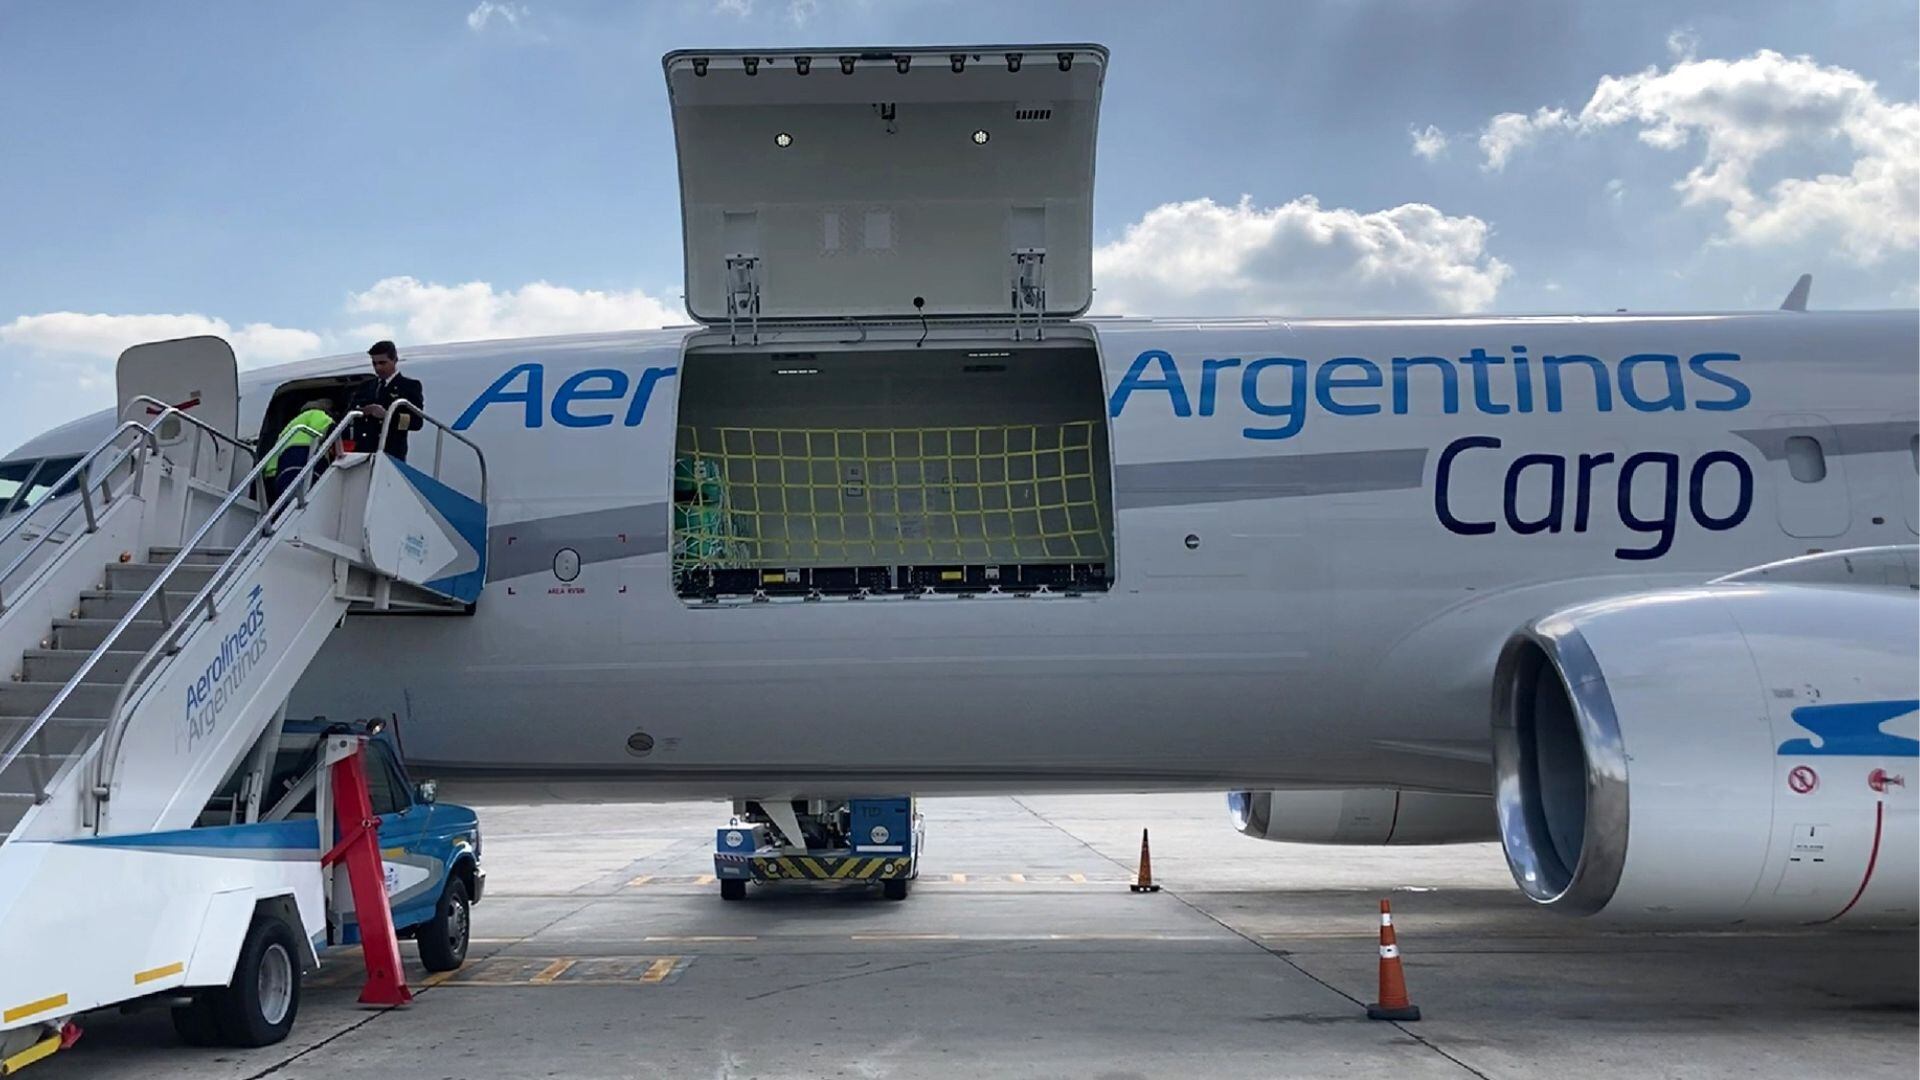 Inhouse Aerolineas Cargo